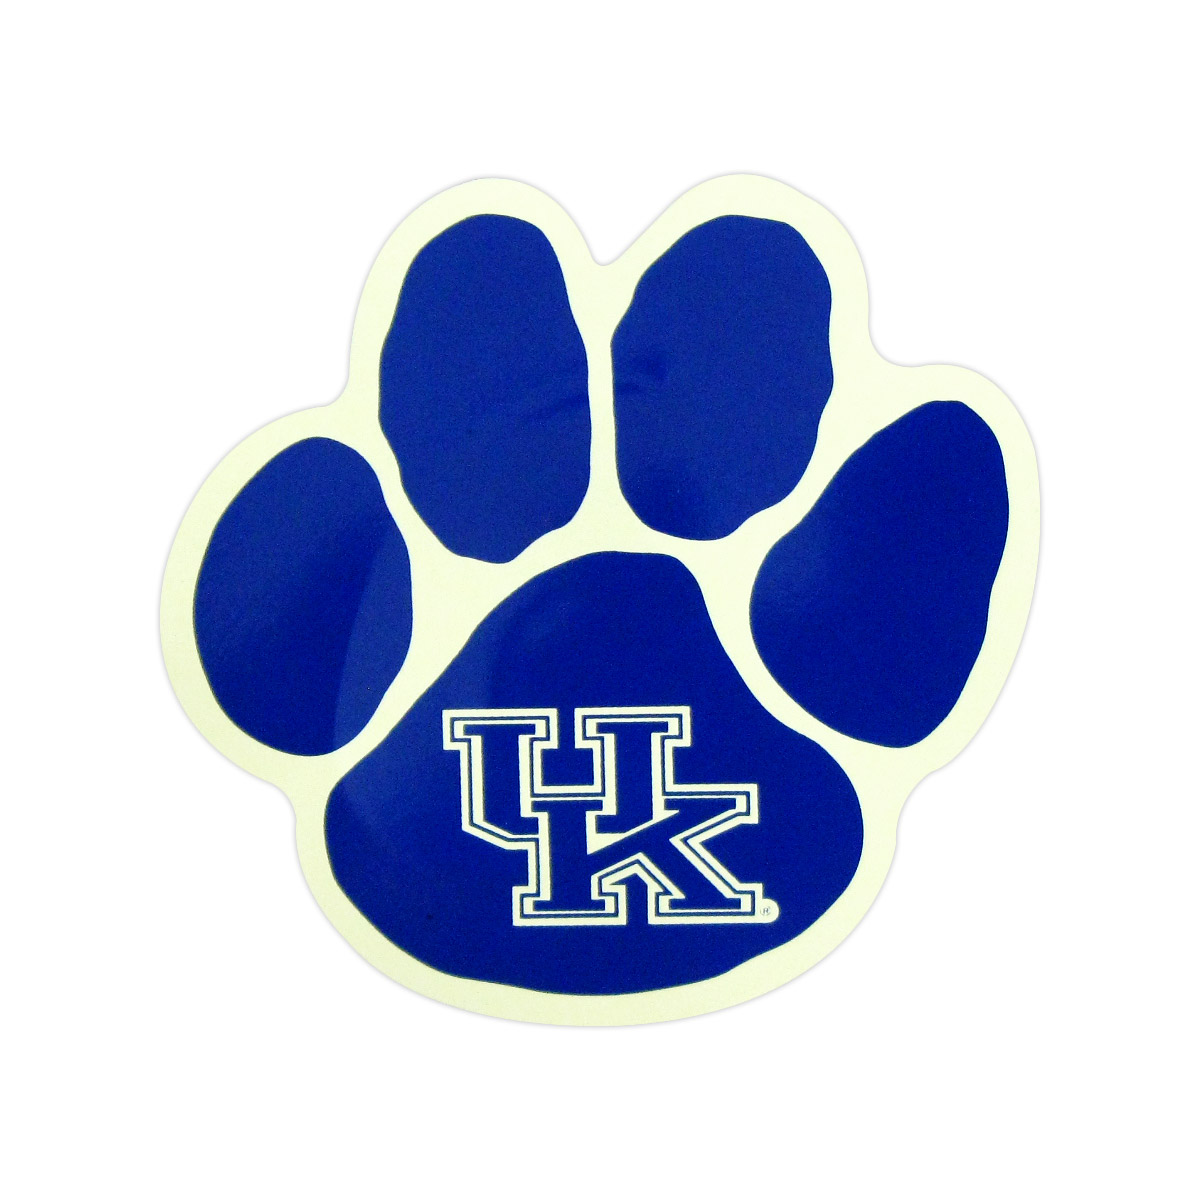 Kentucky wildcats basketball clipart